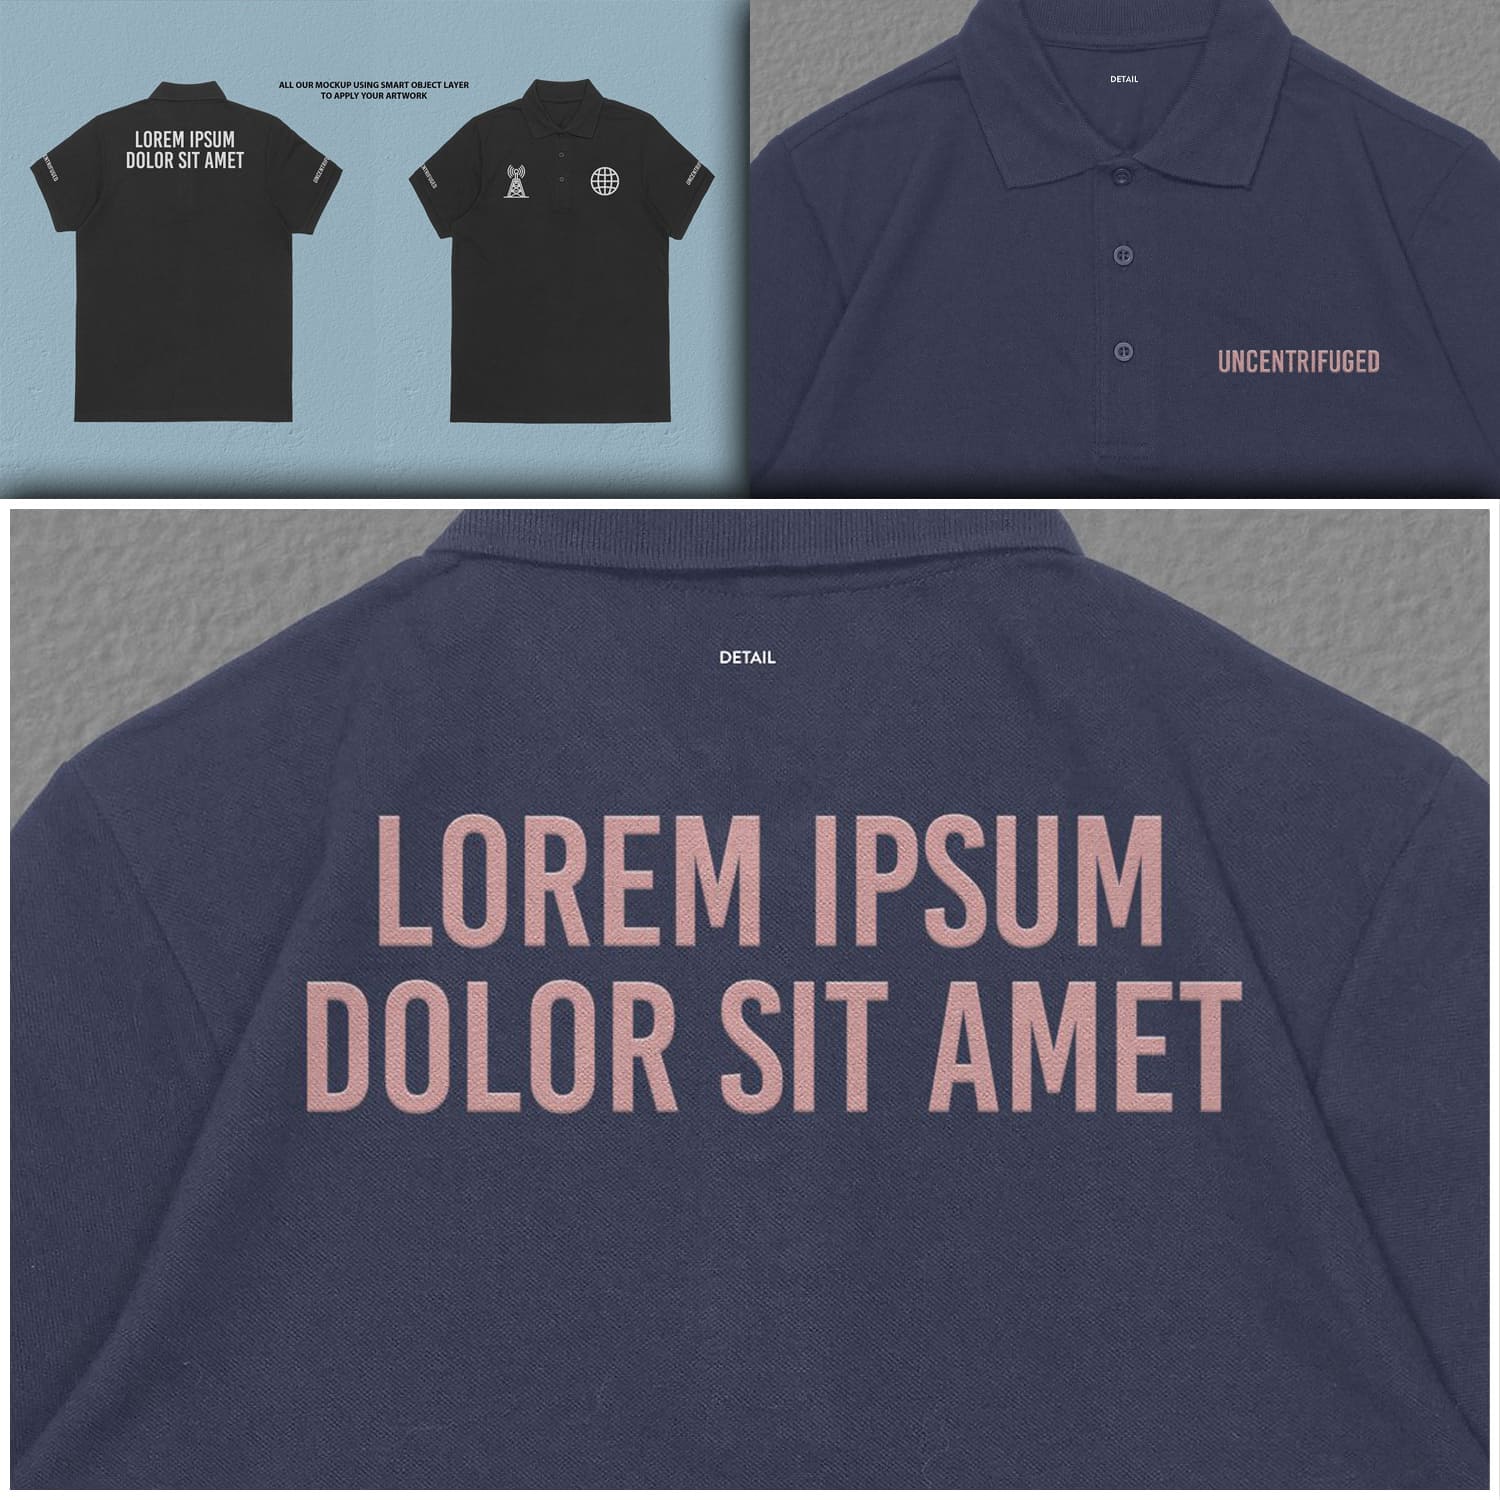 Man t-shirt with inscription "Lorem ipsum dolor sit amet".